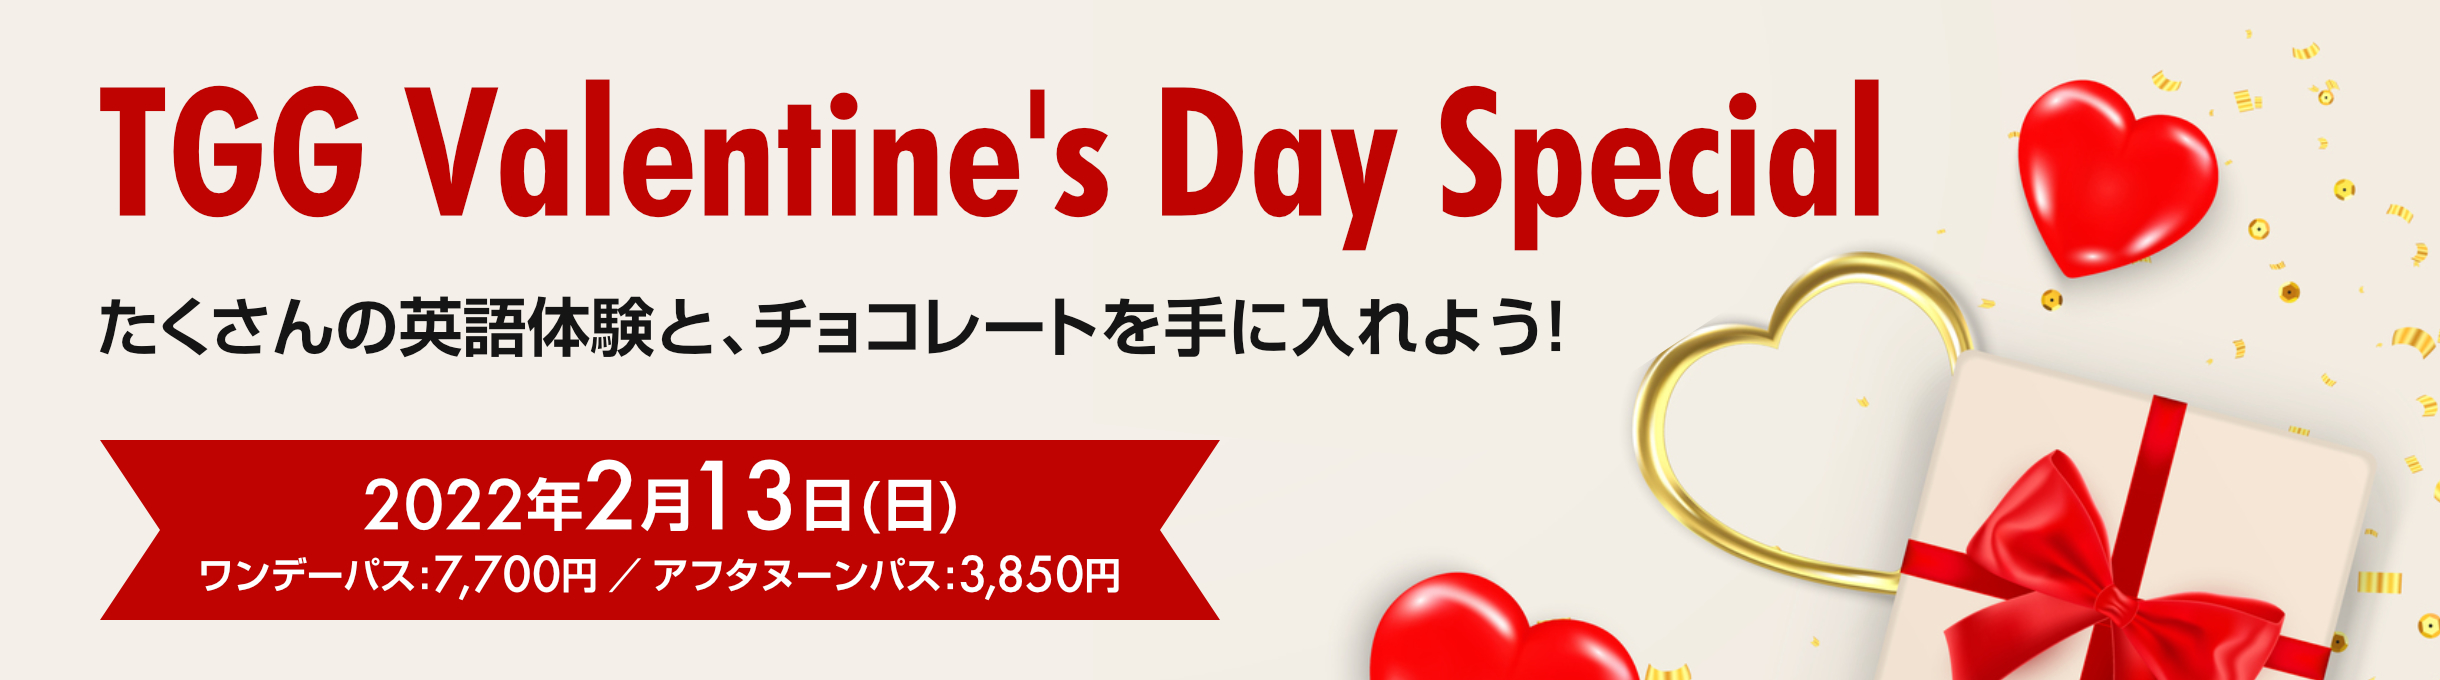 TGG Valentine's Day Special　たくさんの英語体験と、チョコレートを手に入れよう！　2022年2月13日(日)　ワンデーパス：7,700円　アフタヌーンパス：3,850円